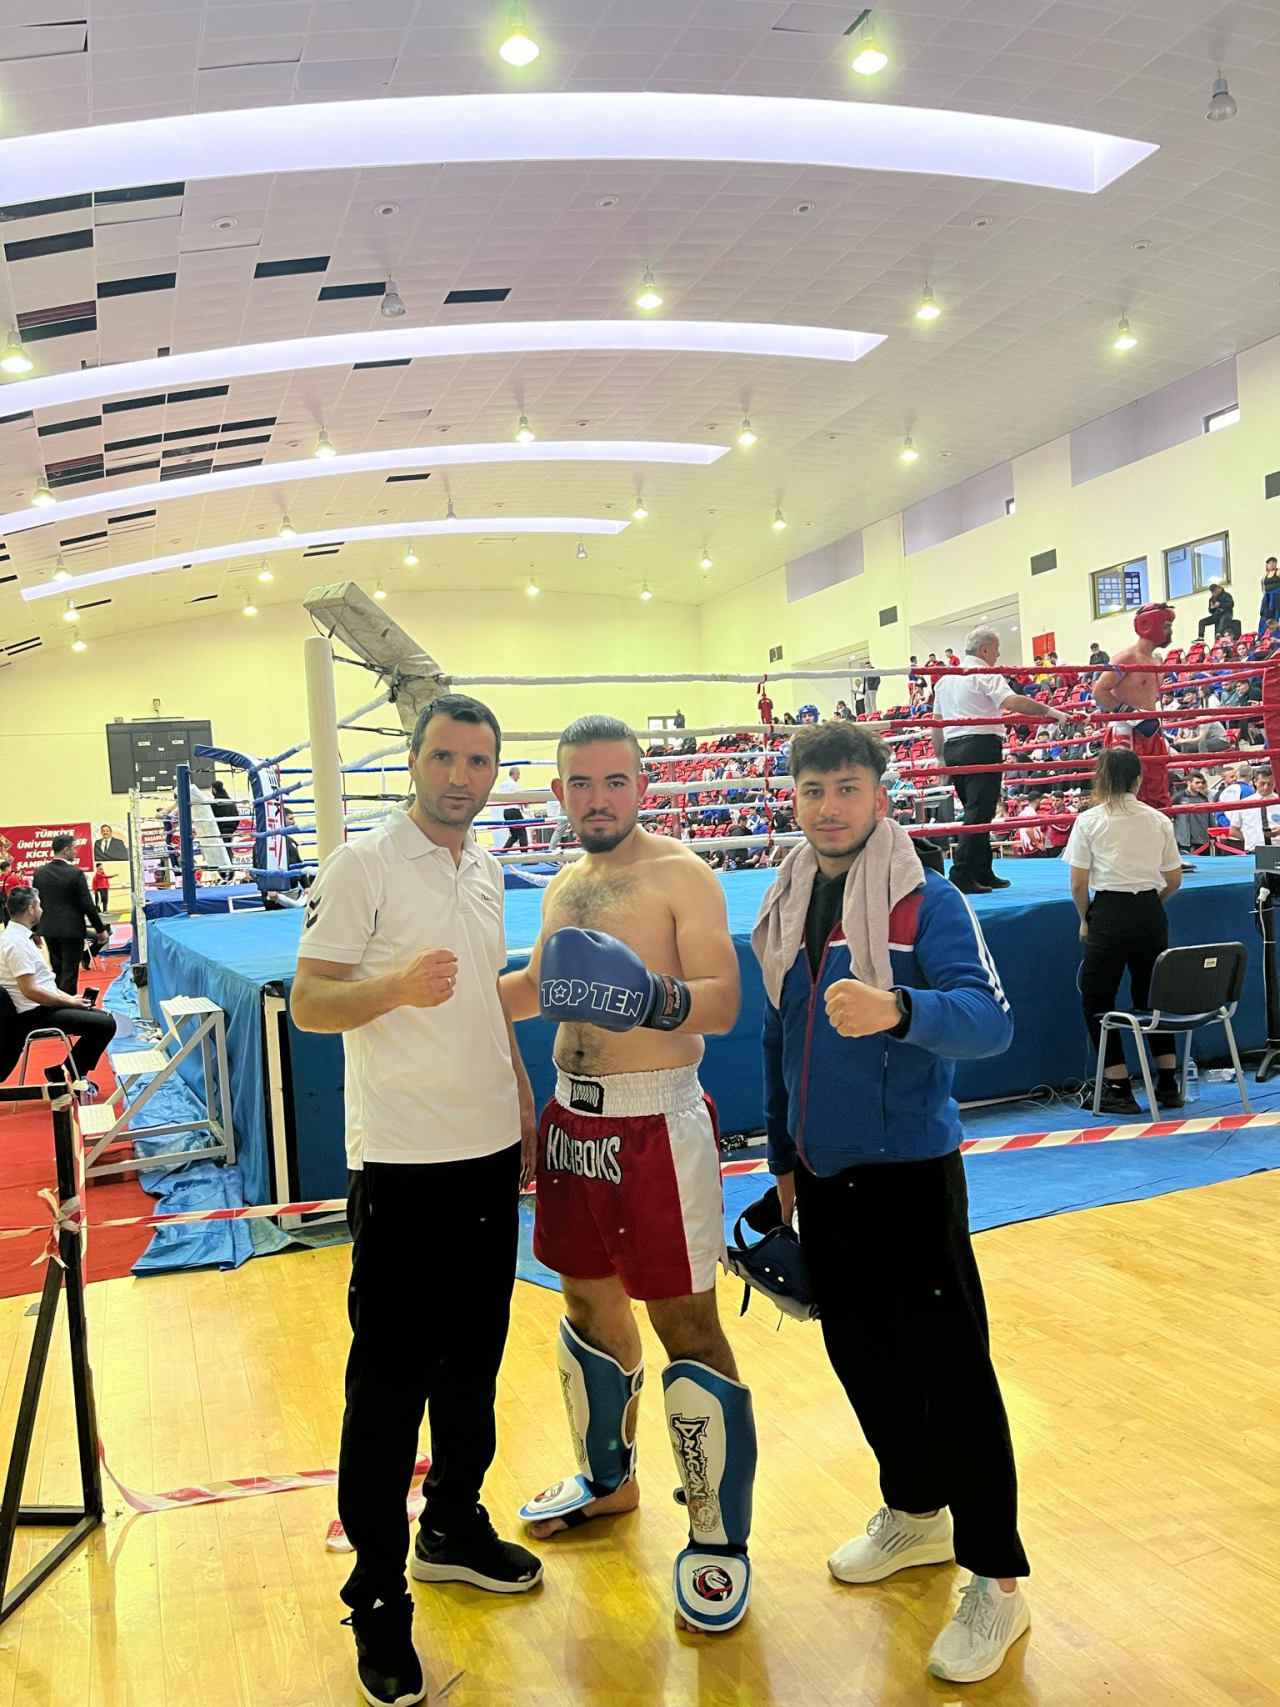 Mersin’de düzenlenen üniversiteler arası Muay Thai Türkiye şampiyonası